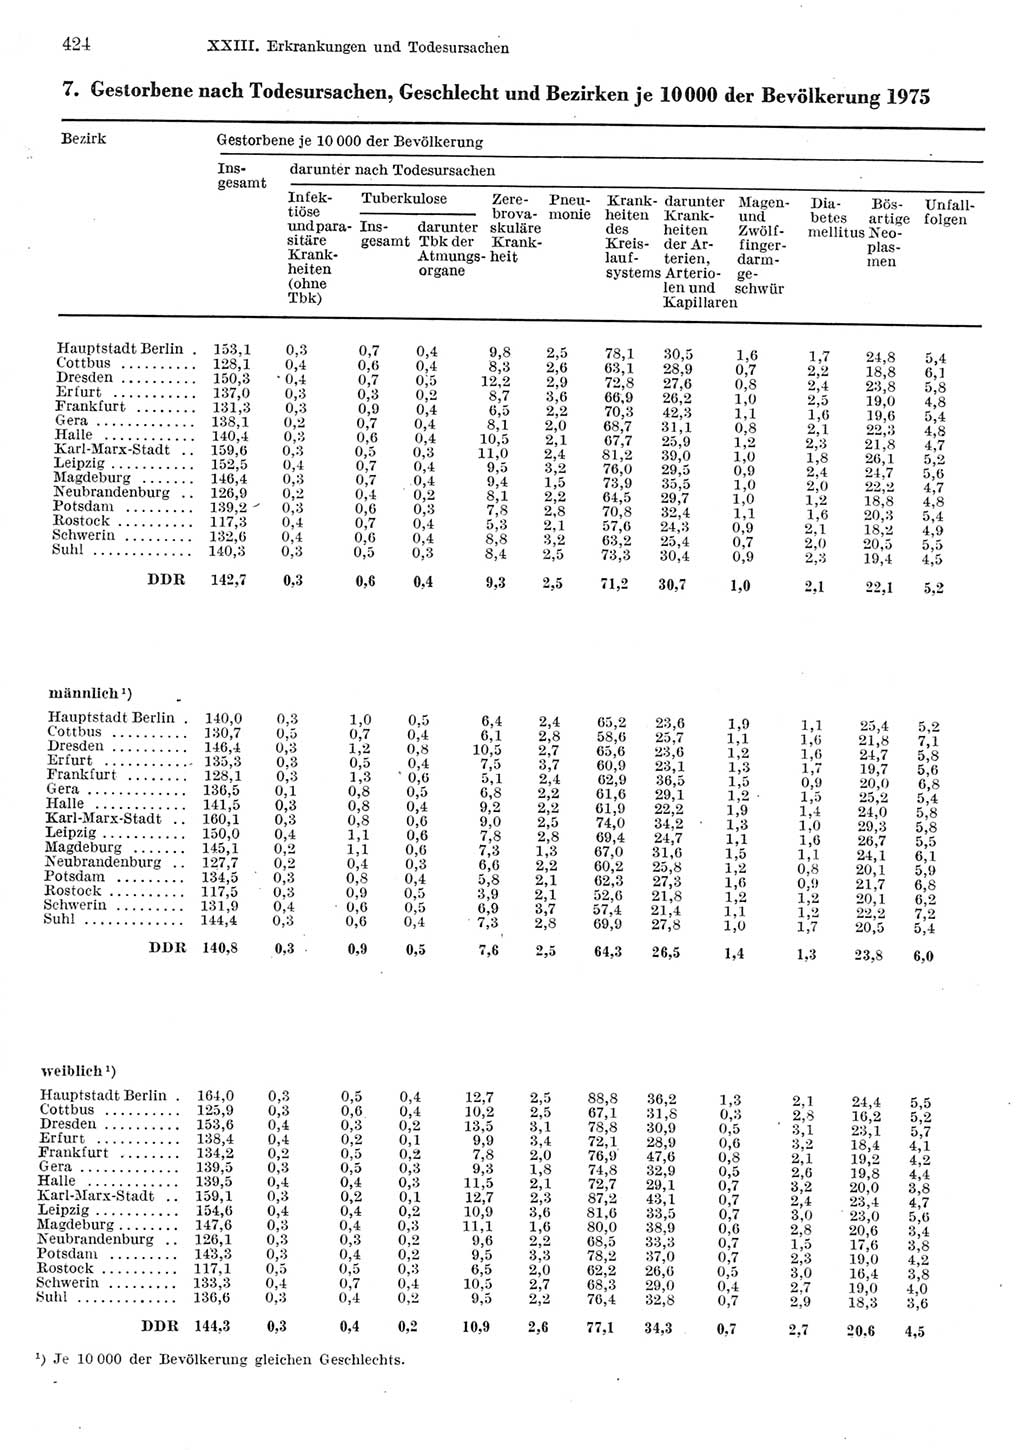 Statistisches Jahrbuch der Deutschen Demokratischen Republik (DDR) 1977, Seite 424 (Stat. Jb. DDR 1977, S. 424)